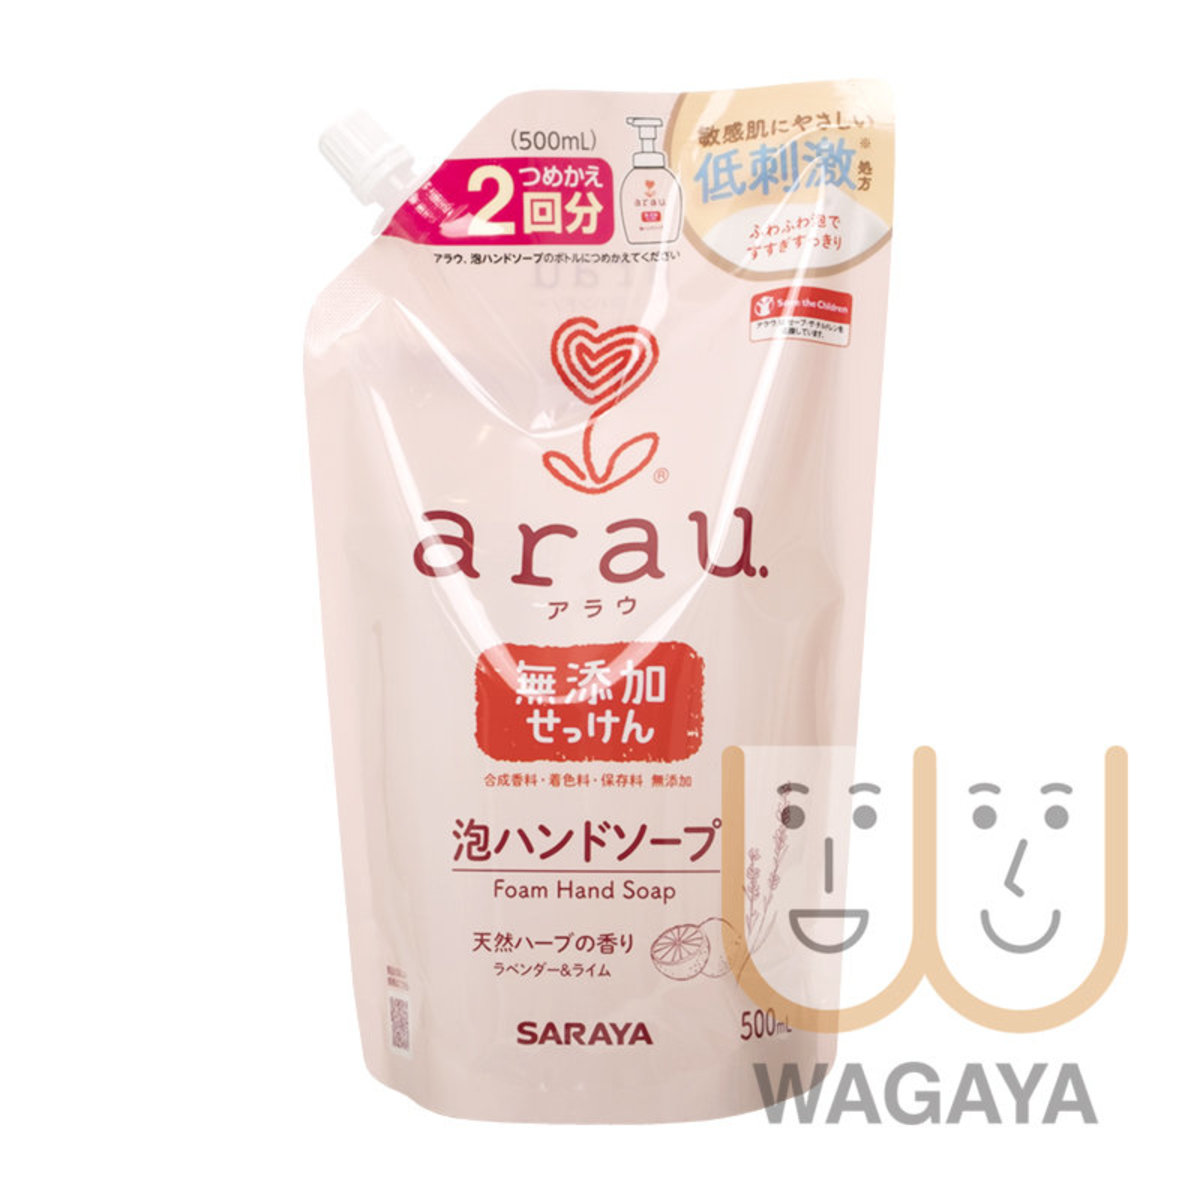 arau Baby Foam Hand Soap (Refill) 500ml (Parallel Import)